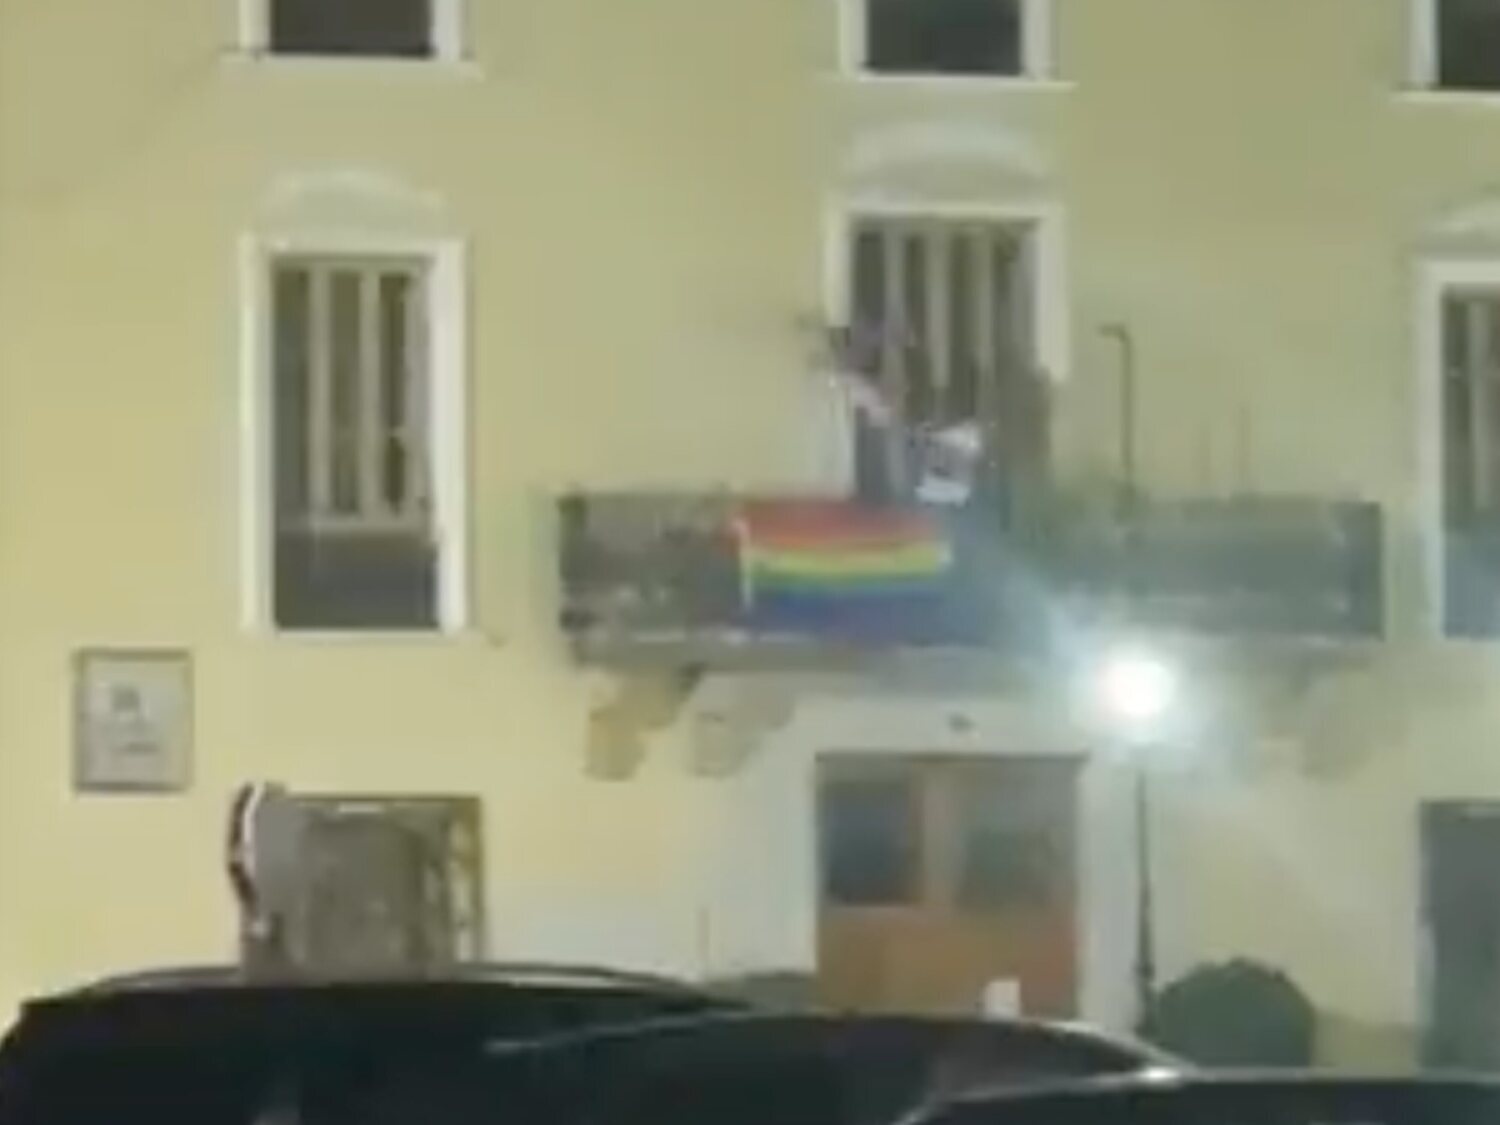 Arrancan las banderas LGTBI para colgar la franquista en pleno Orgullo en Albaida (Valencia)